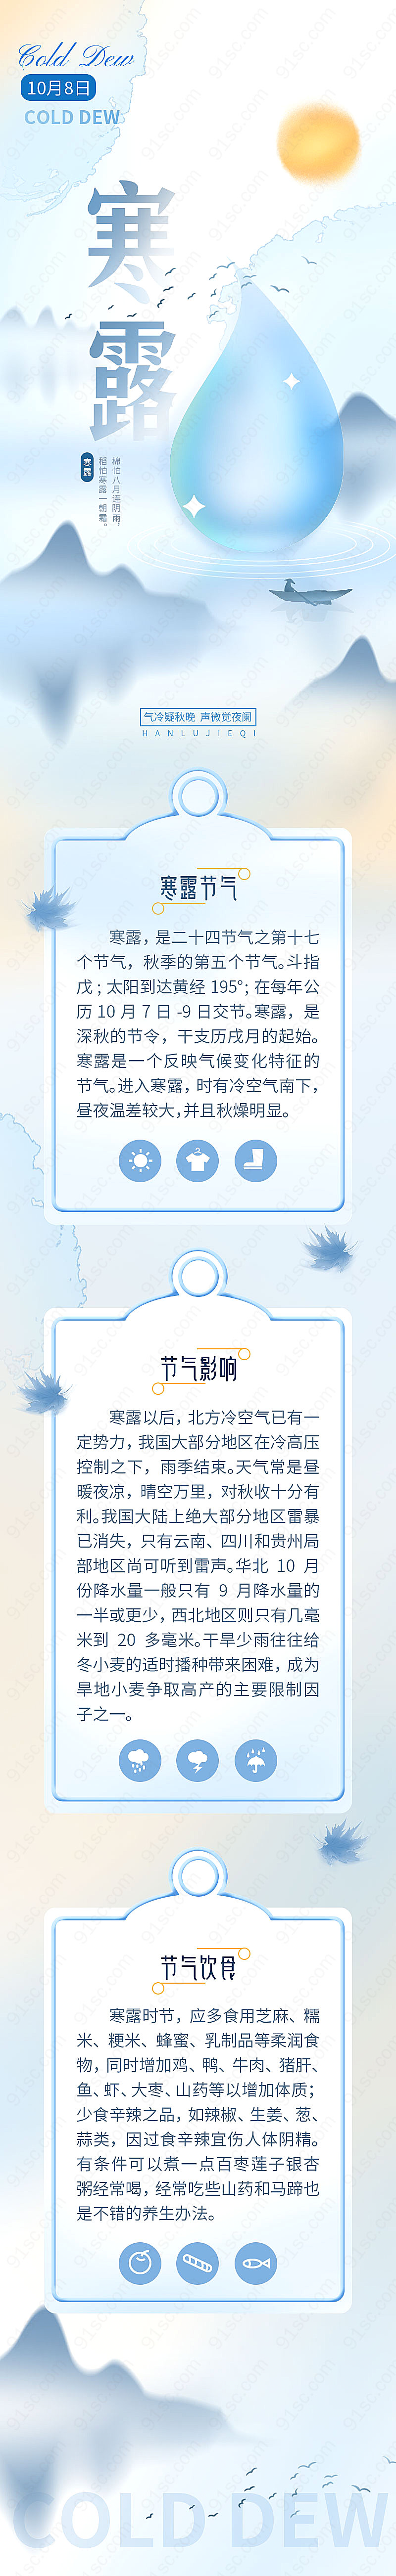 蓝色风格中国风节气手机海报新媒体用图下载